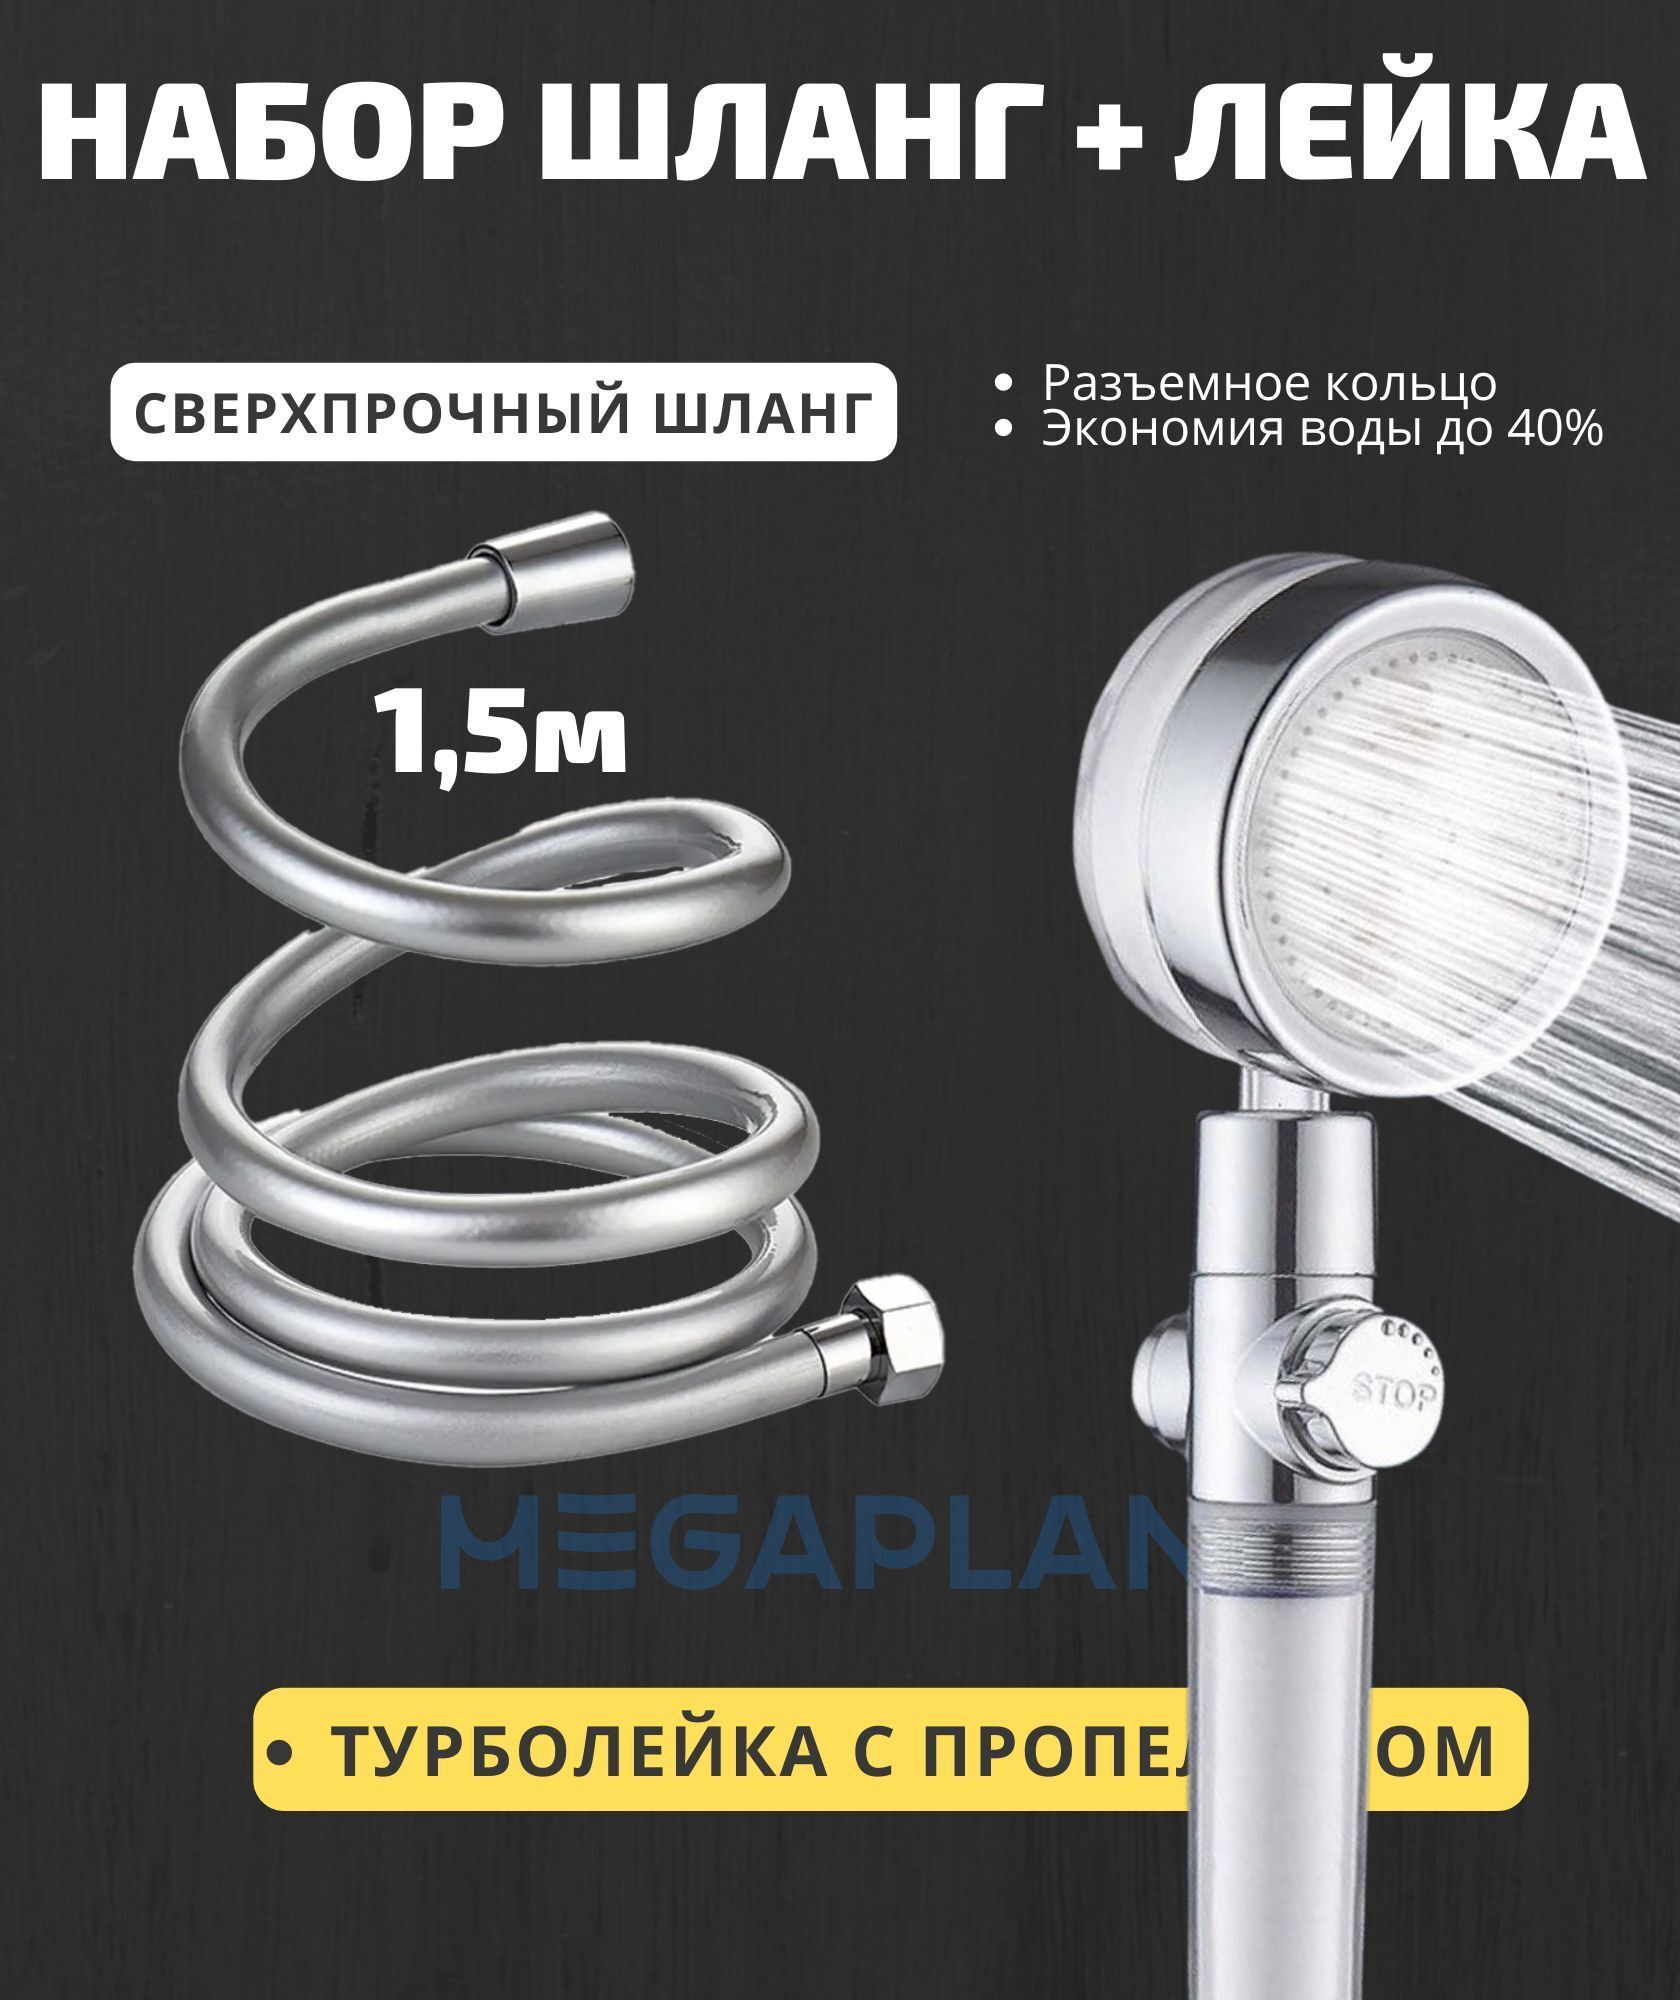 Душевая лейка с турбонаддувом и вентилятором и силиконовый шланг MEGAPLANE силиконовый шланг профитт